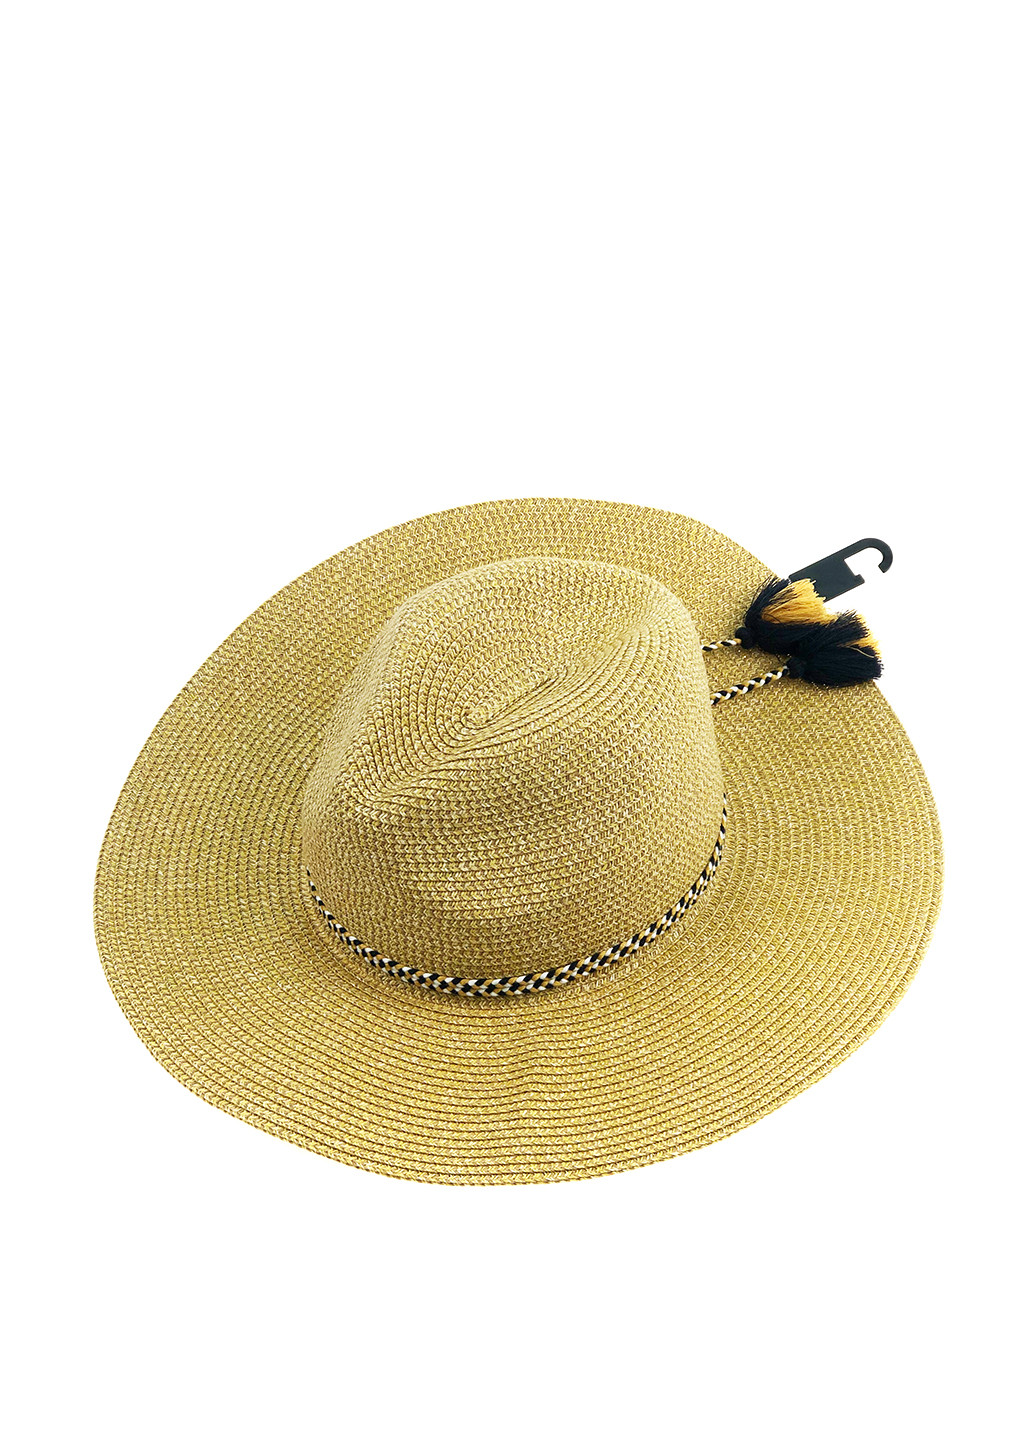 Шляпа C&A широкополая однотонная бежевая кэжуал солома, полиэстер